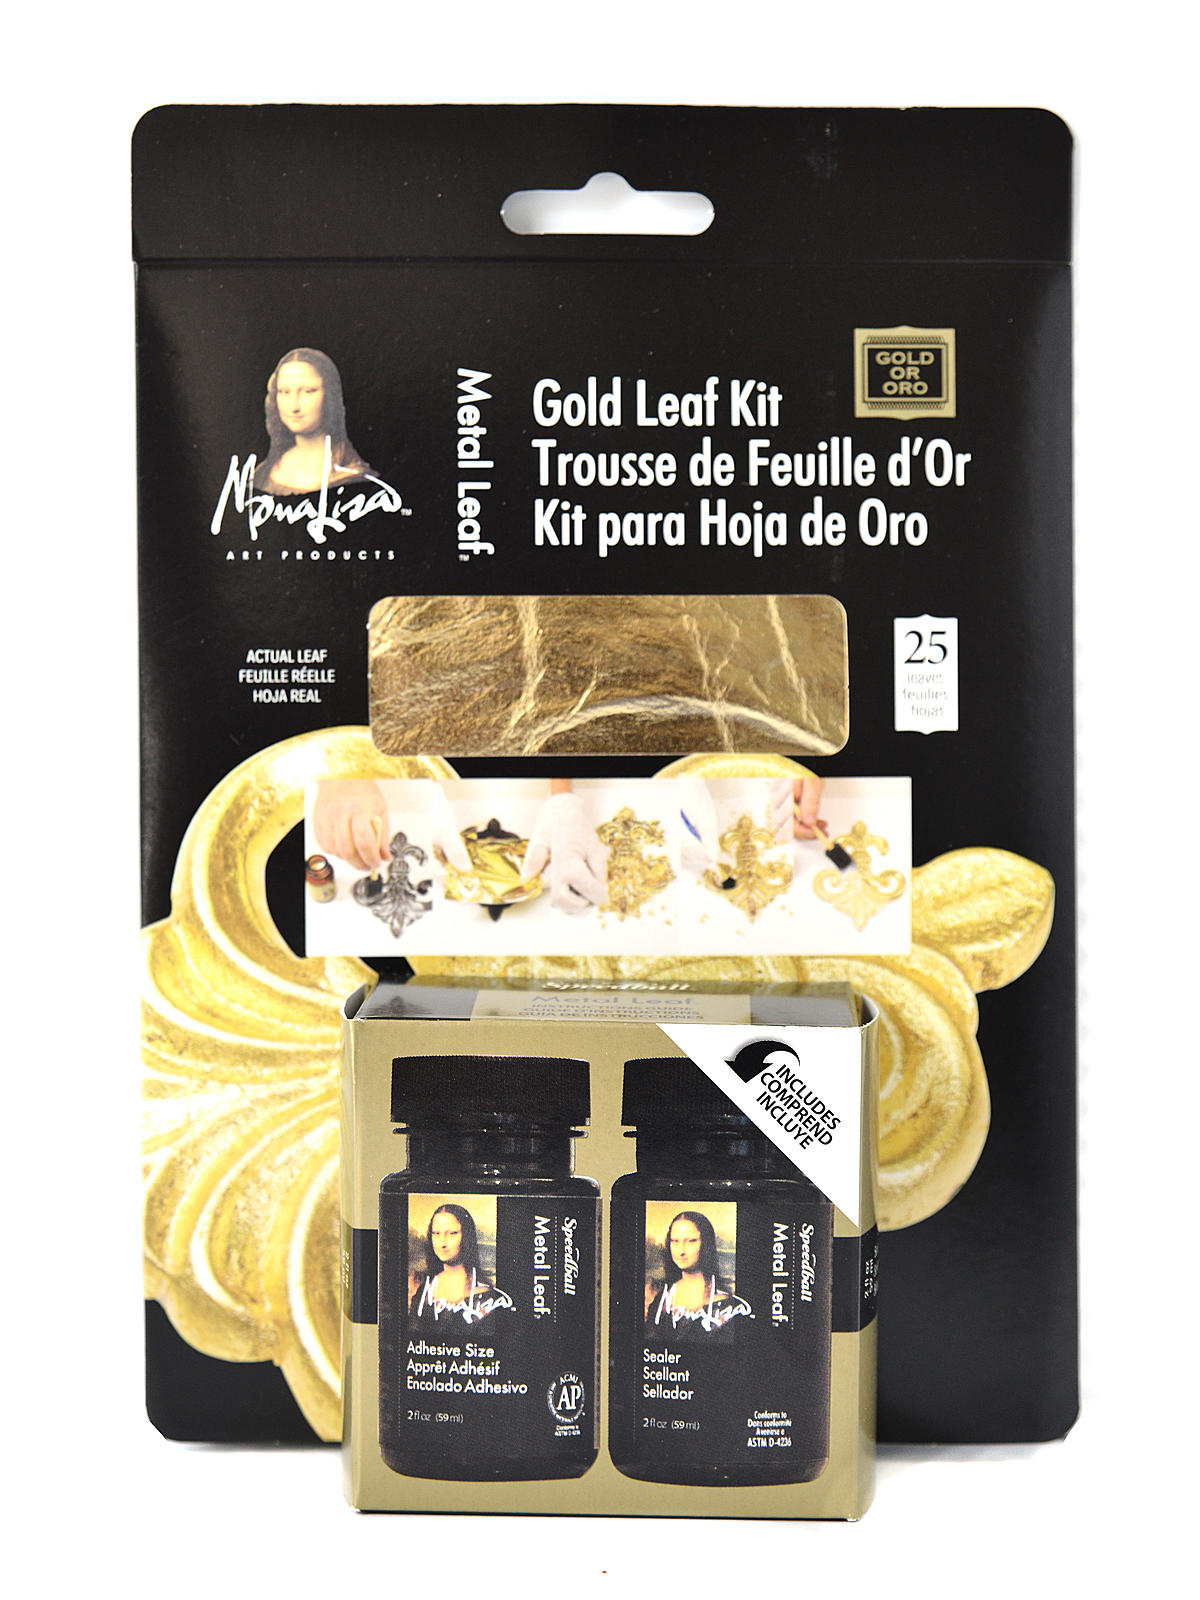 Gold Leaf Kit Gold Leaf Kit